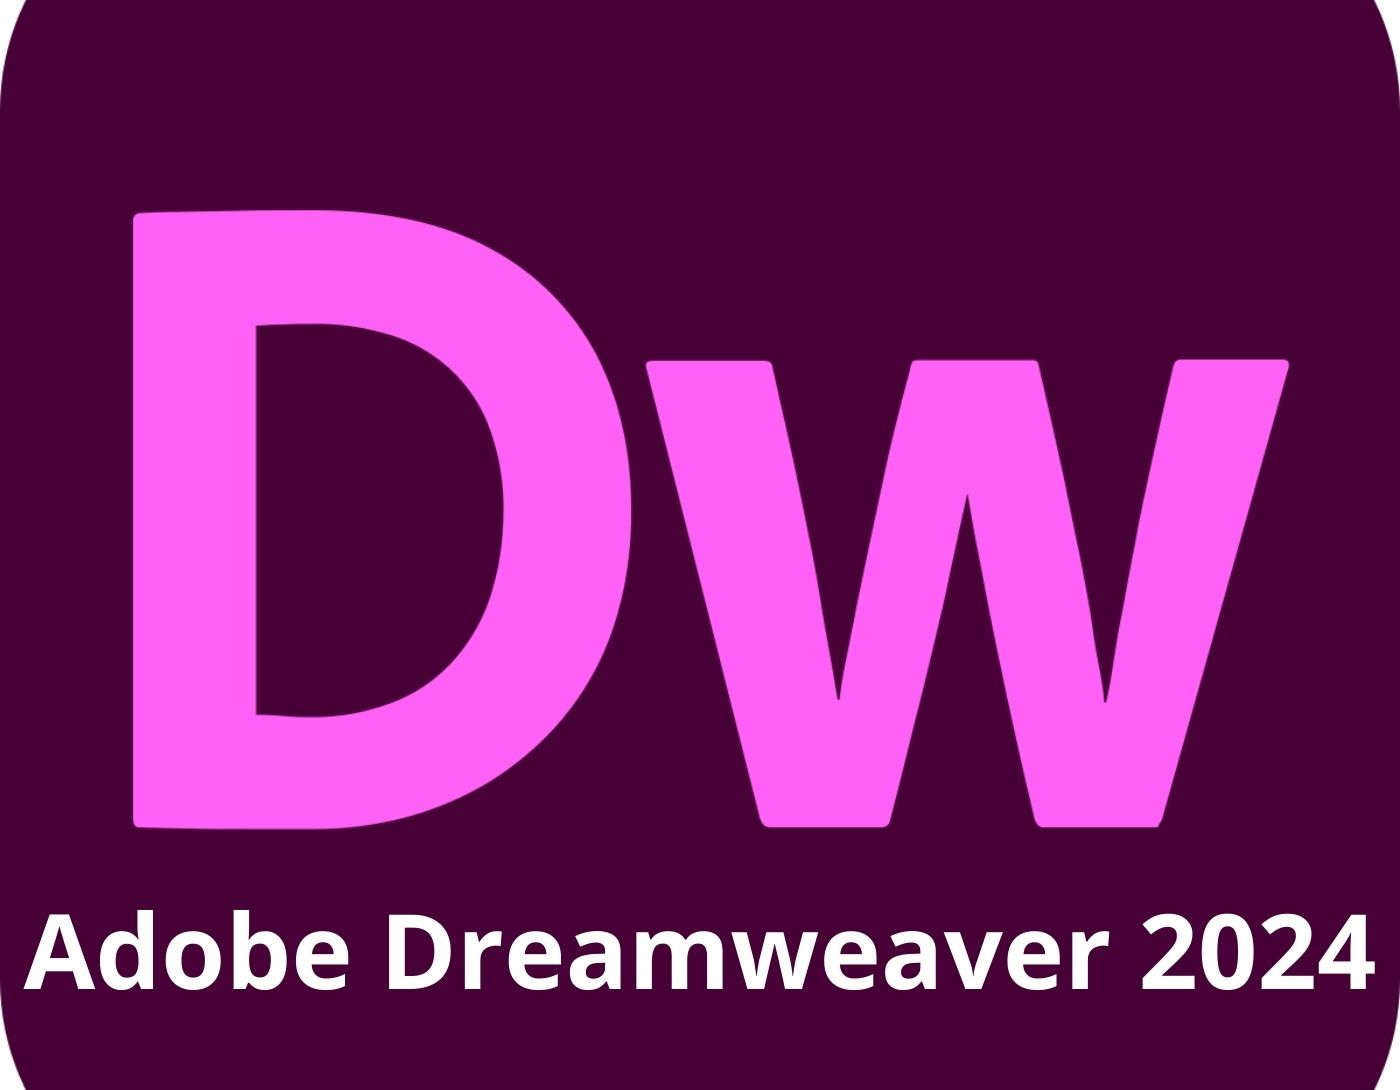 صورة واجهة برنامج Adobe Dreamweaver 2024